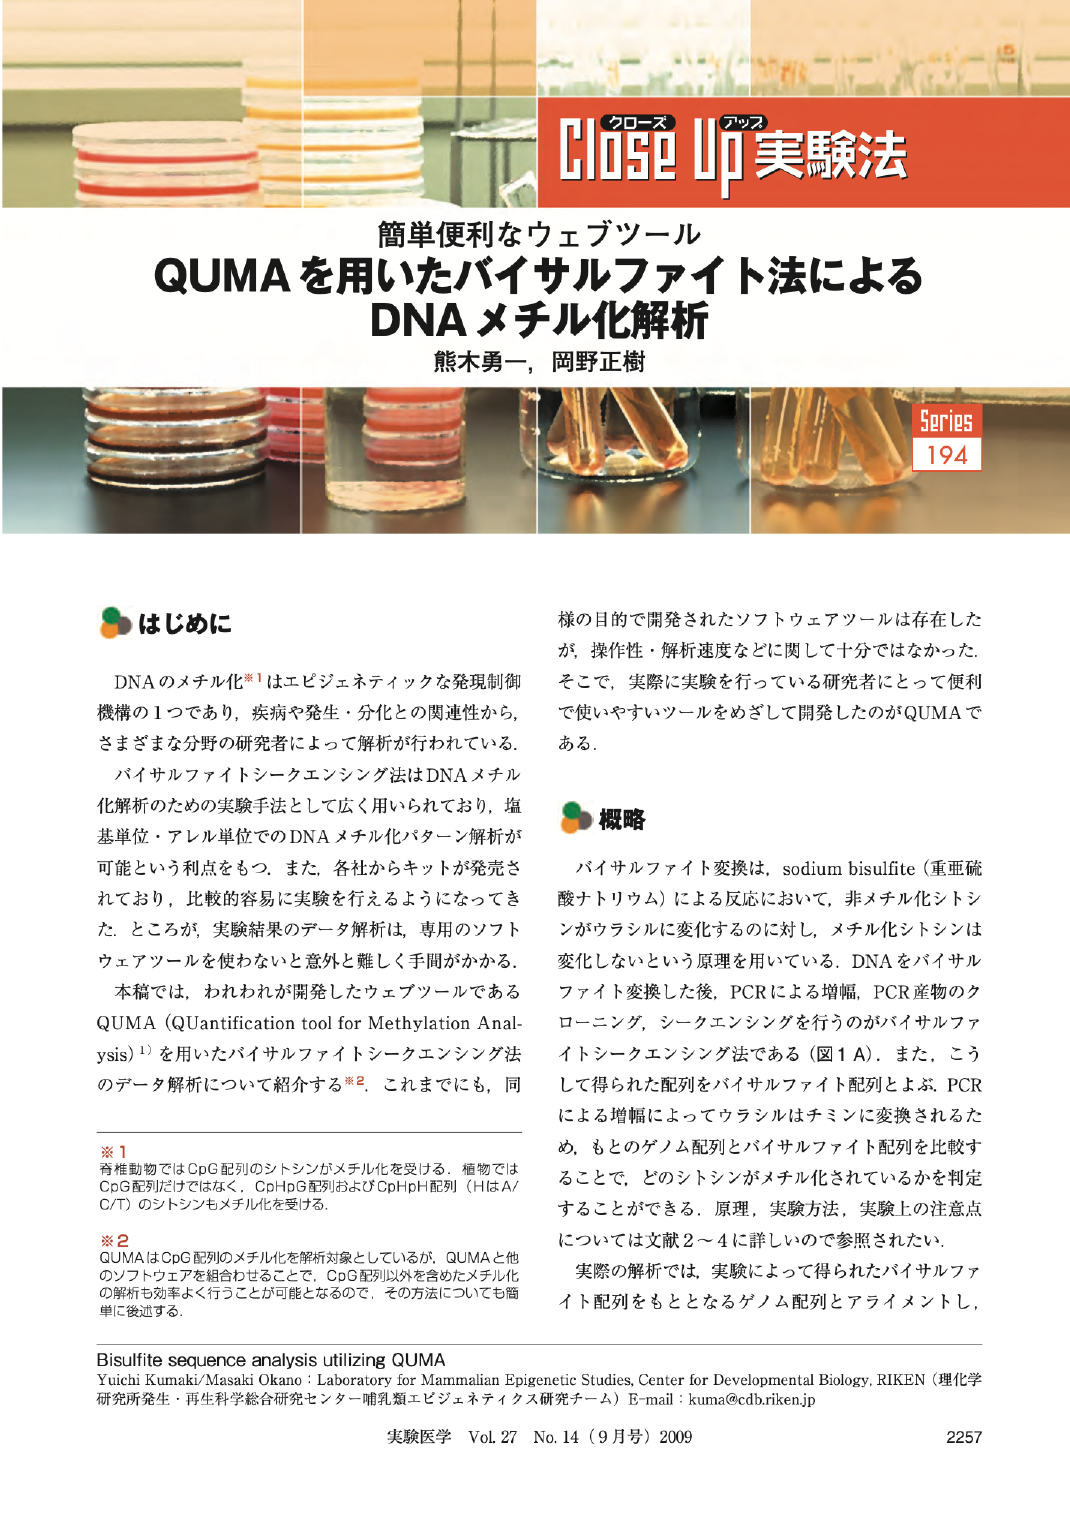 簡単便利なウェブツール：QUMAを用いたバイサルファイト法によるDNAメチル化解析